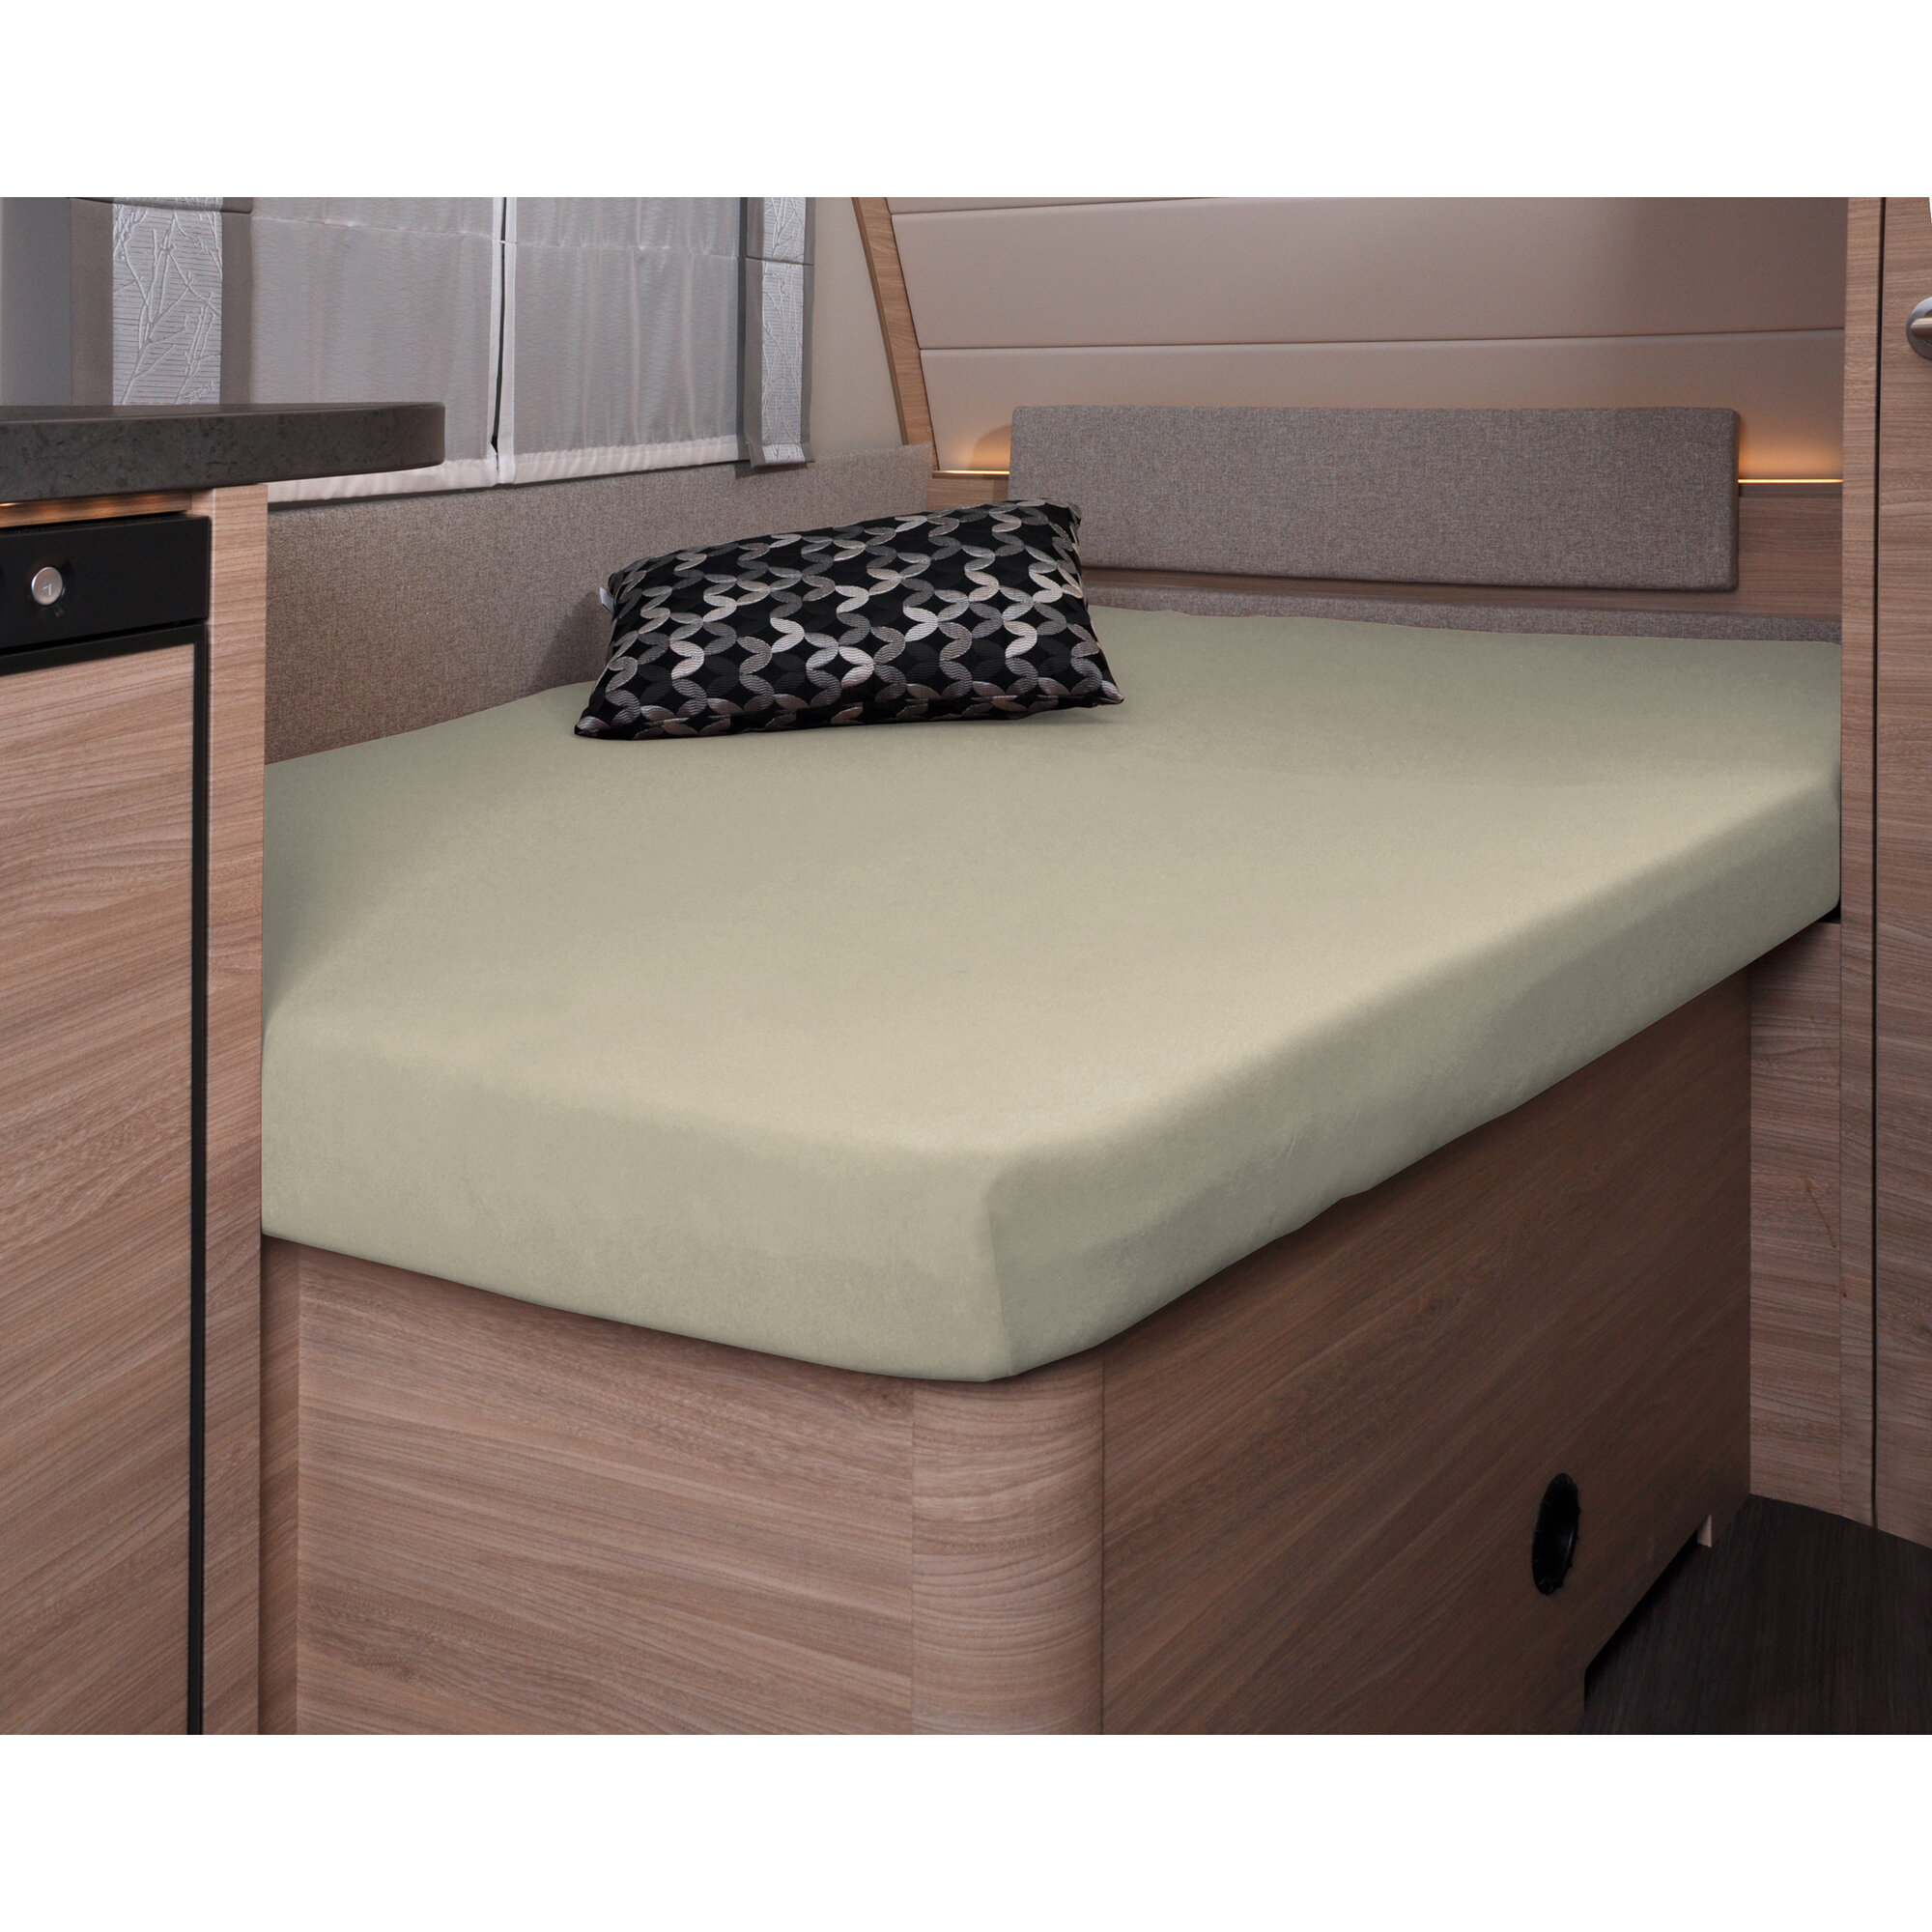 Spannbettlaken, 137 x 195 (110 / 90) cm für französisches Bett im Wohnwagen